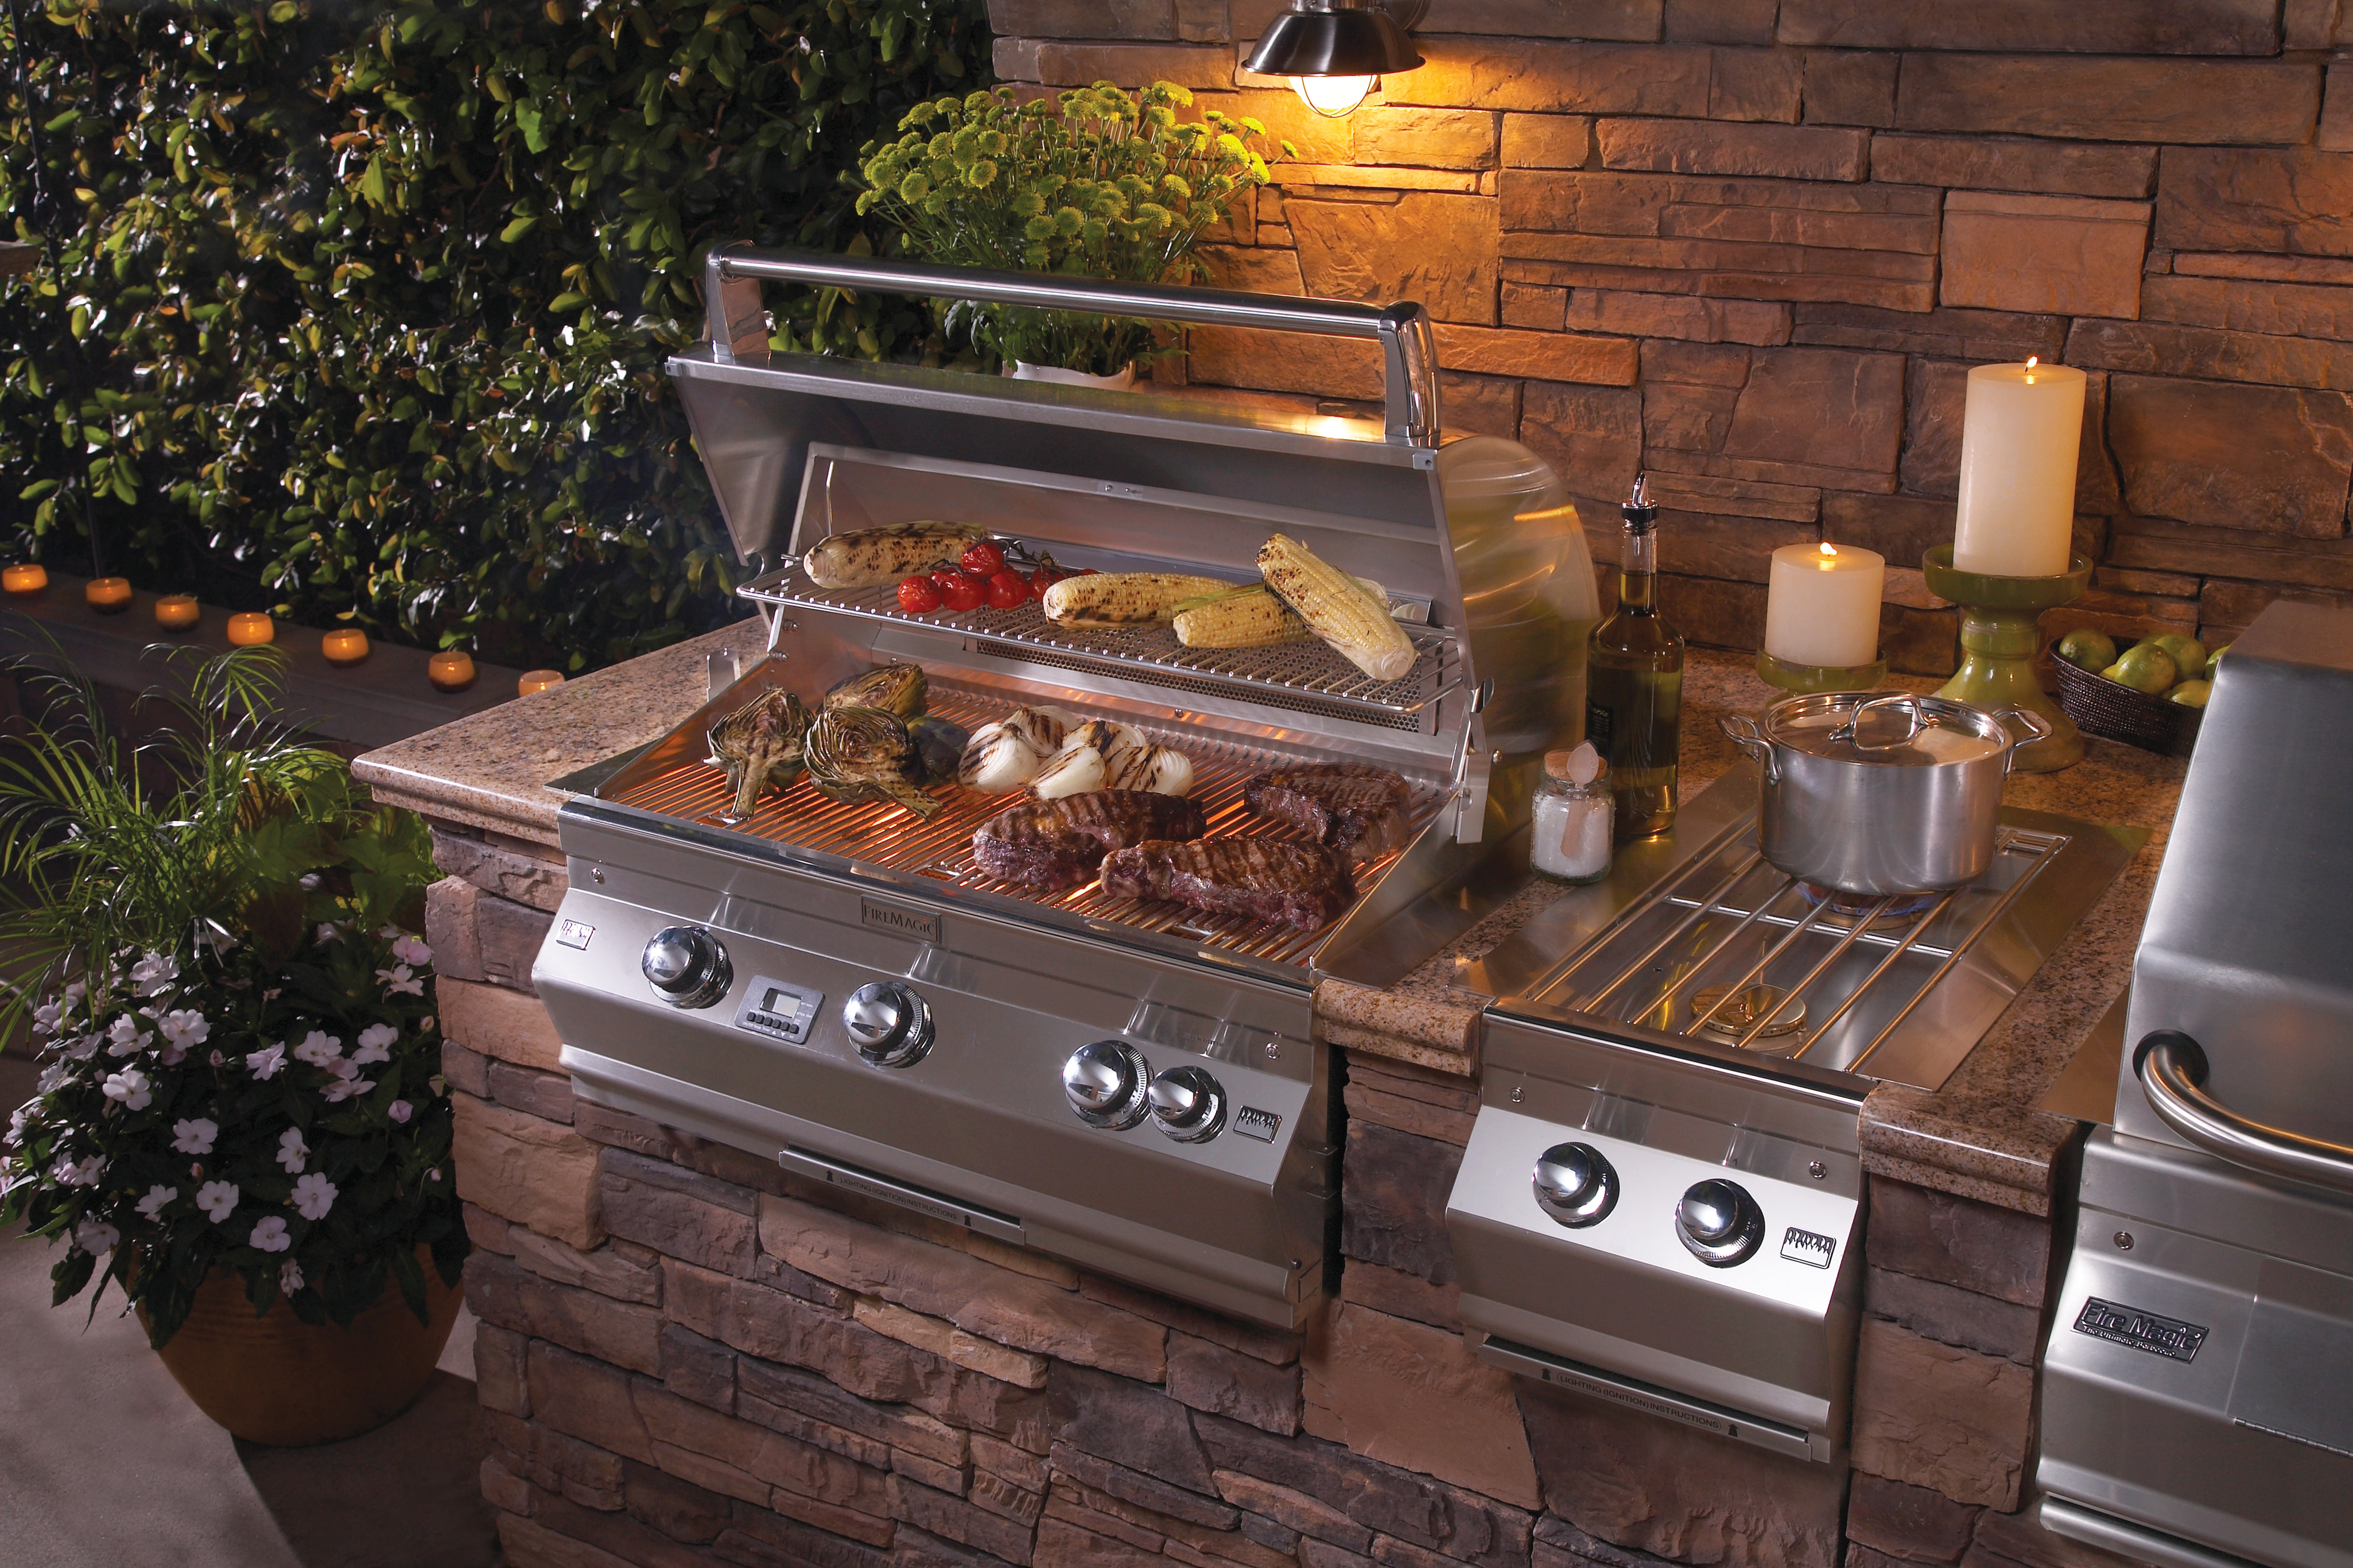 grill burner sink outdoor kitchen